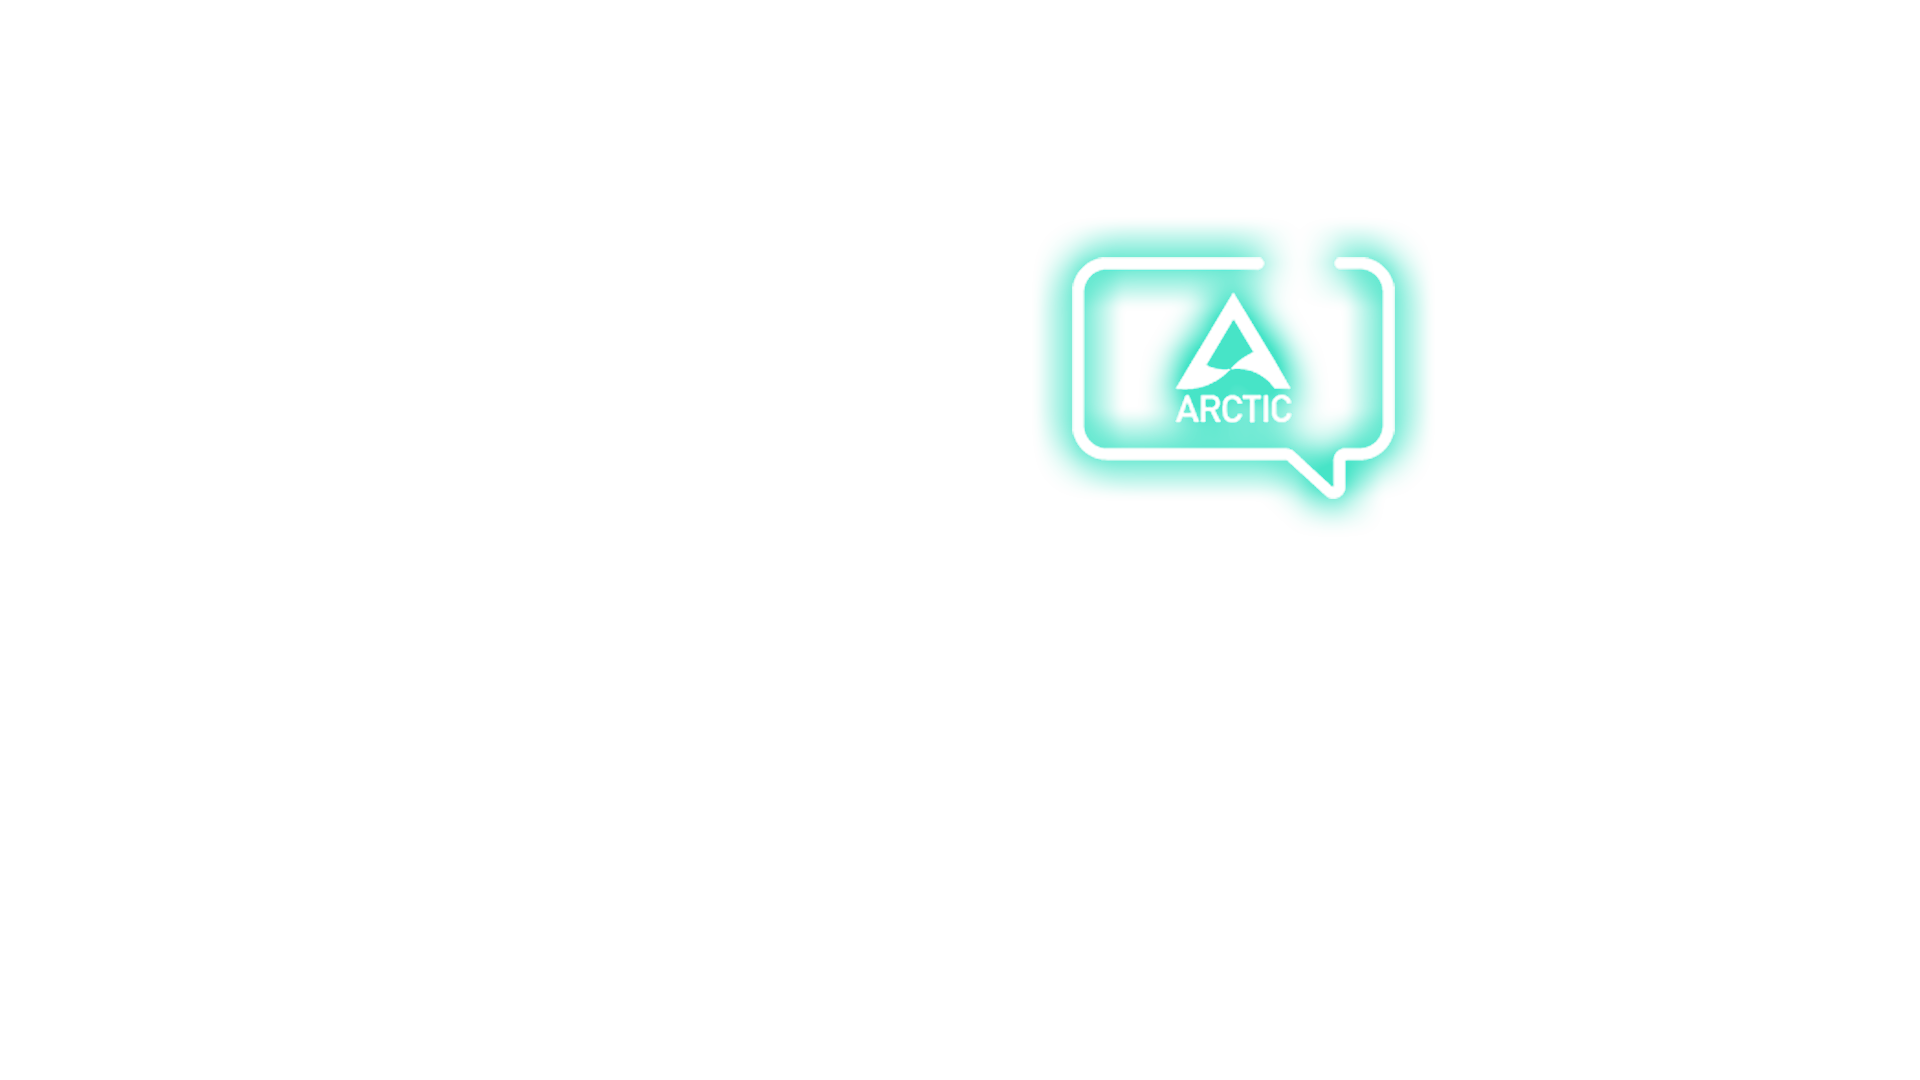 Arctic_UeberArctic_fg